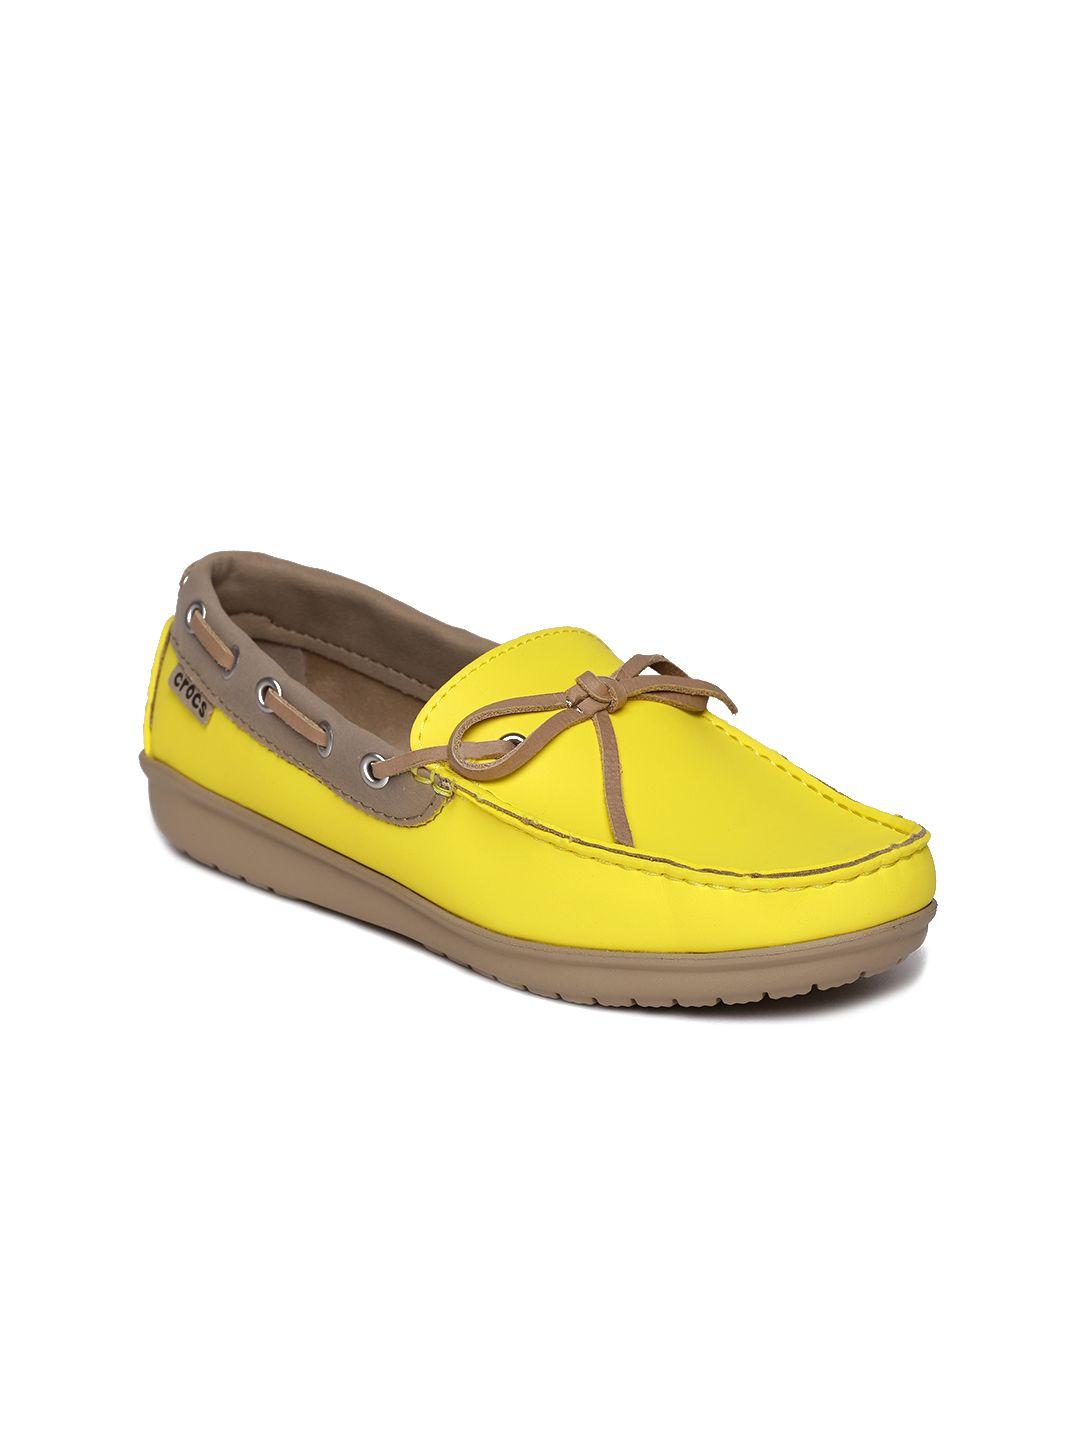 crocs women yellow boat shoes